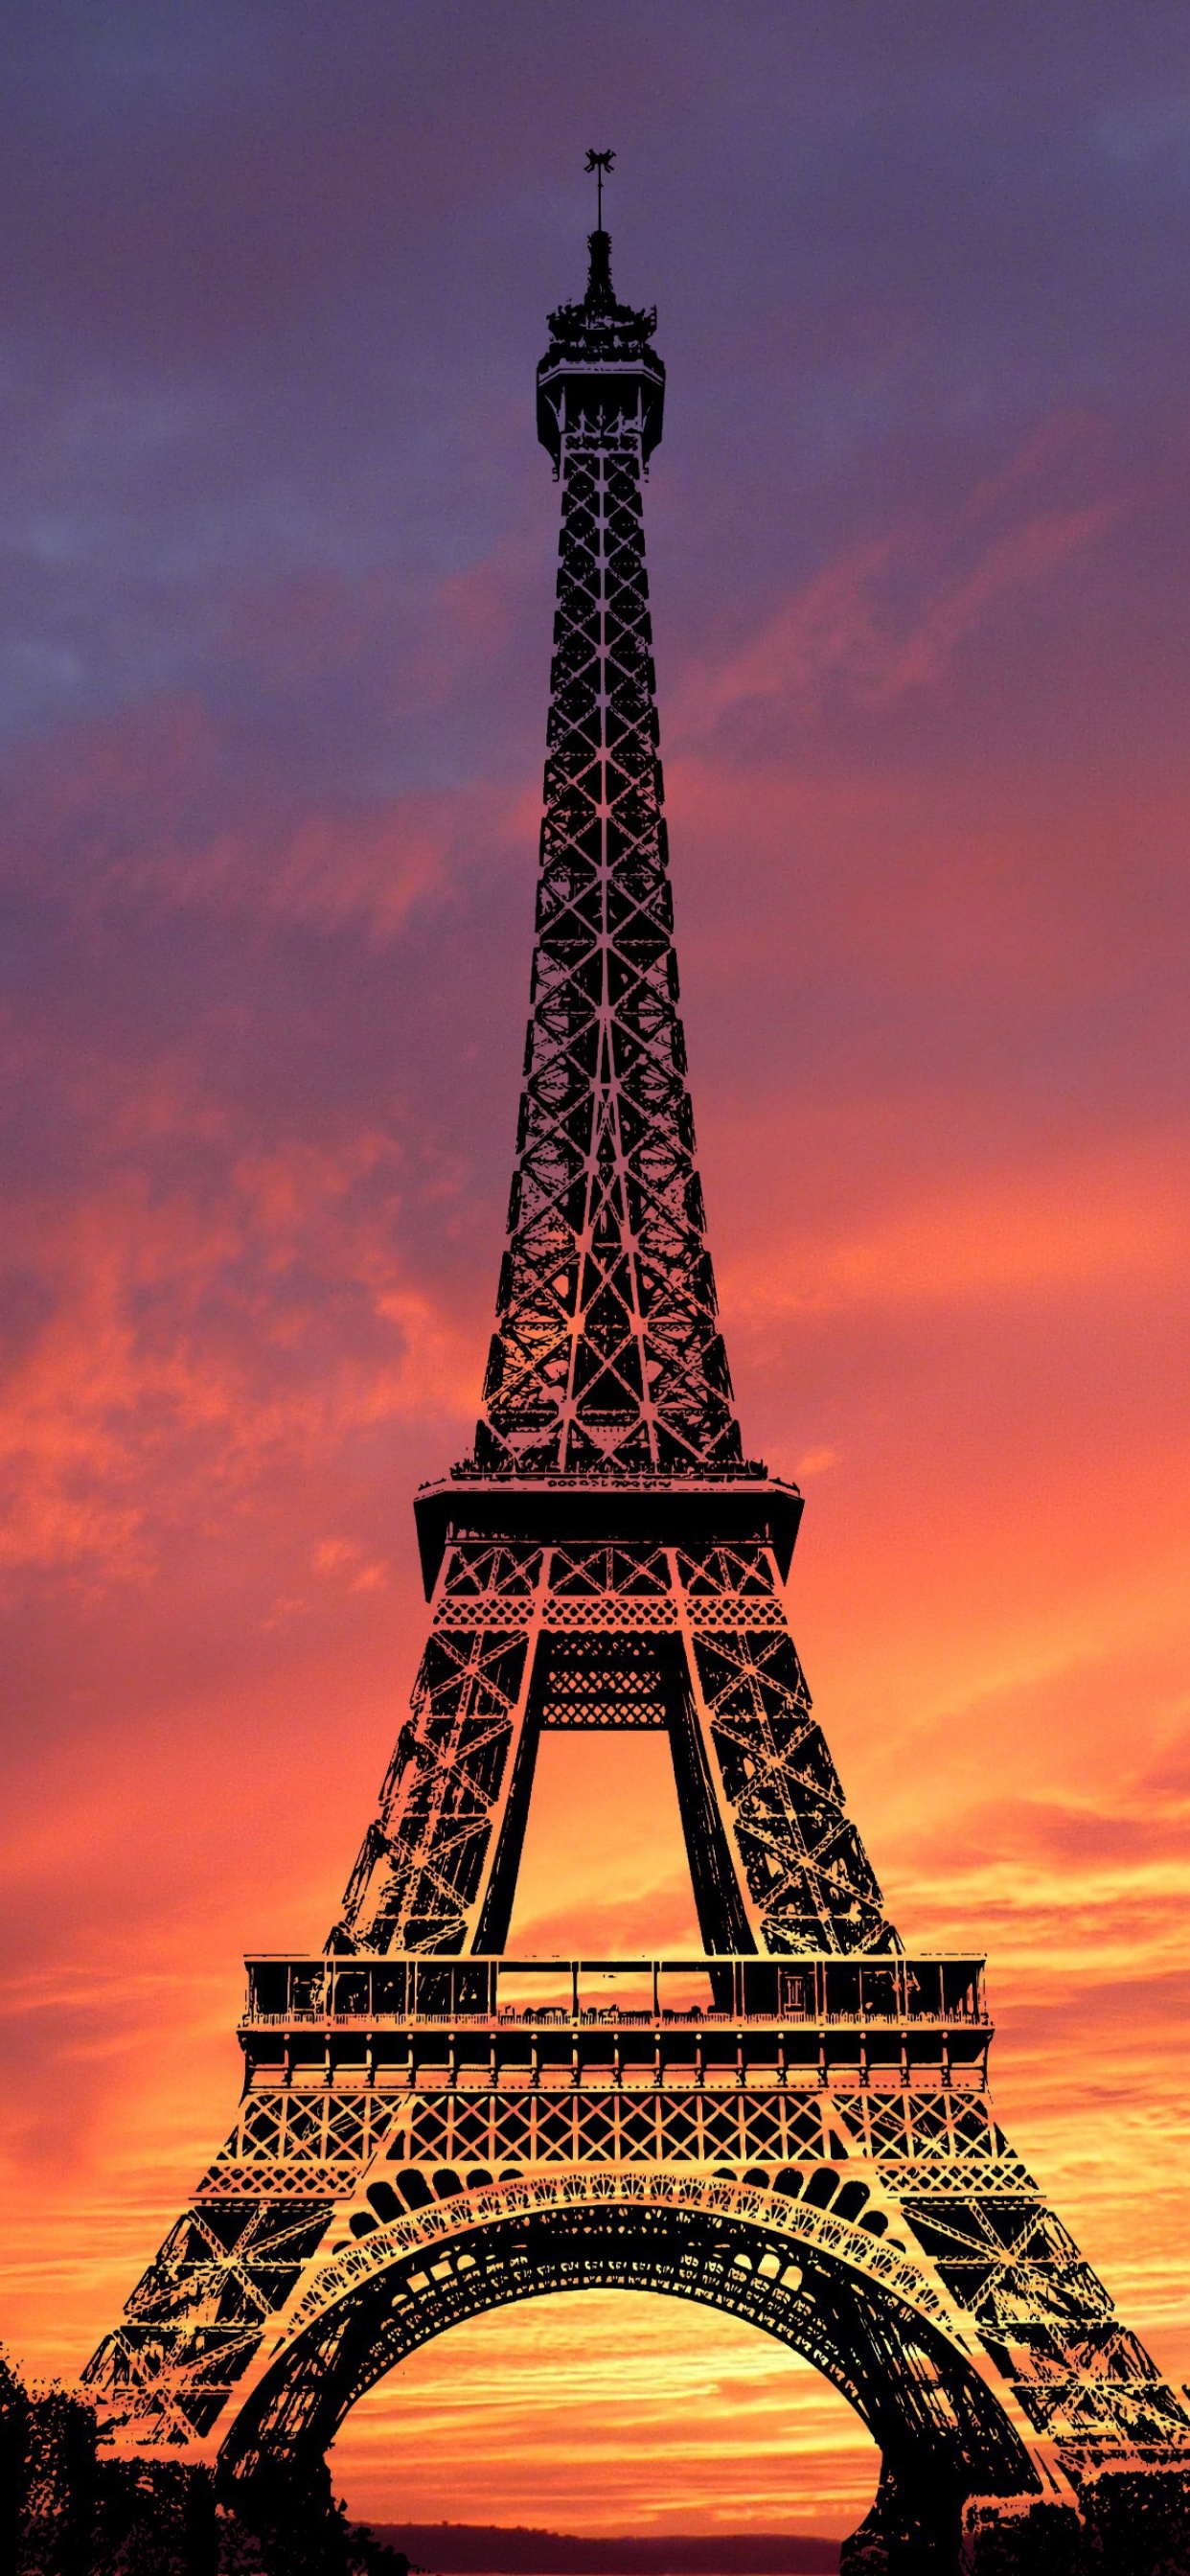 Truy cập vào thế giới lãng mạn và đầy hoài niệm với hình nền tháp Eiffel. Bức ảnh này sẽ giúp cho bạn có được một trải nghiệm đích thực tại thành phố Paris lãng mạn. Tận hưởng vẻ đẹp của tháp Eiffel và những con phố xung quanh nó, sẽ khiến cho bạn cảm thấy như mình đang đứng ngay tại chỗ.